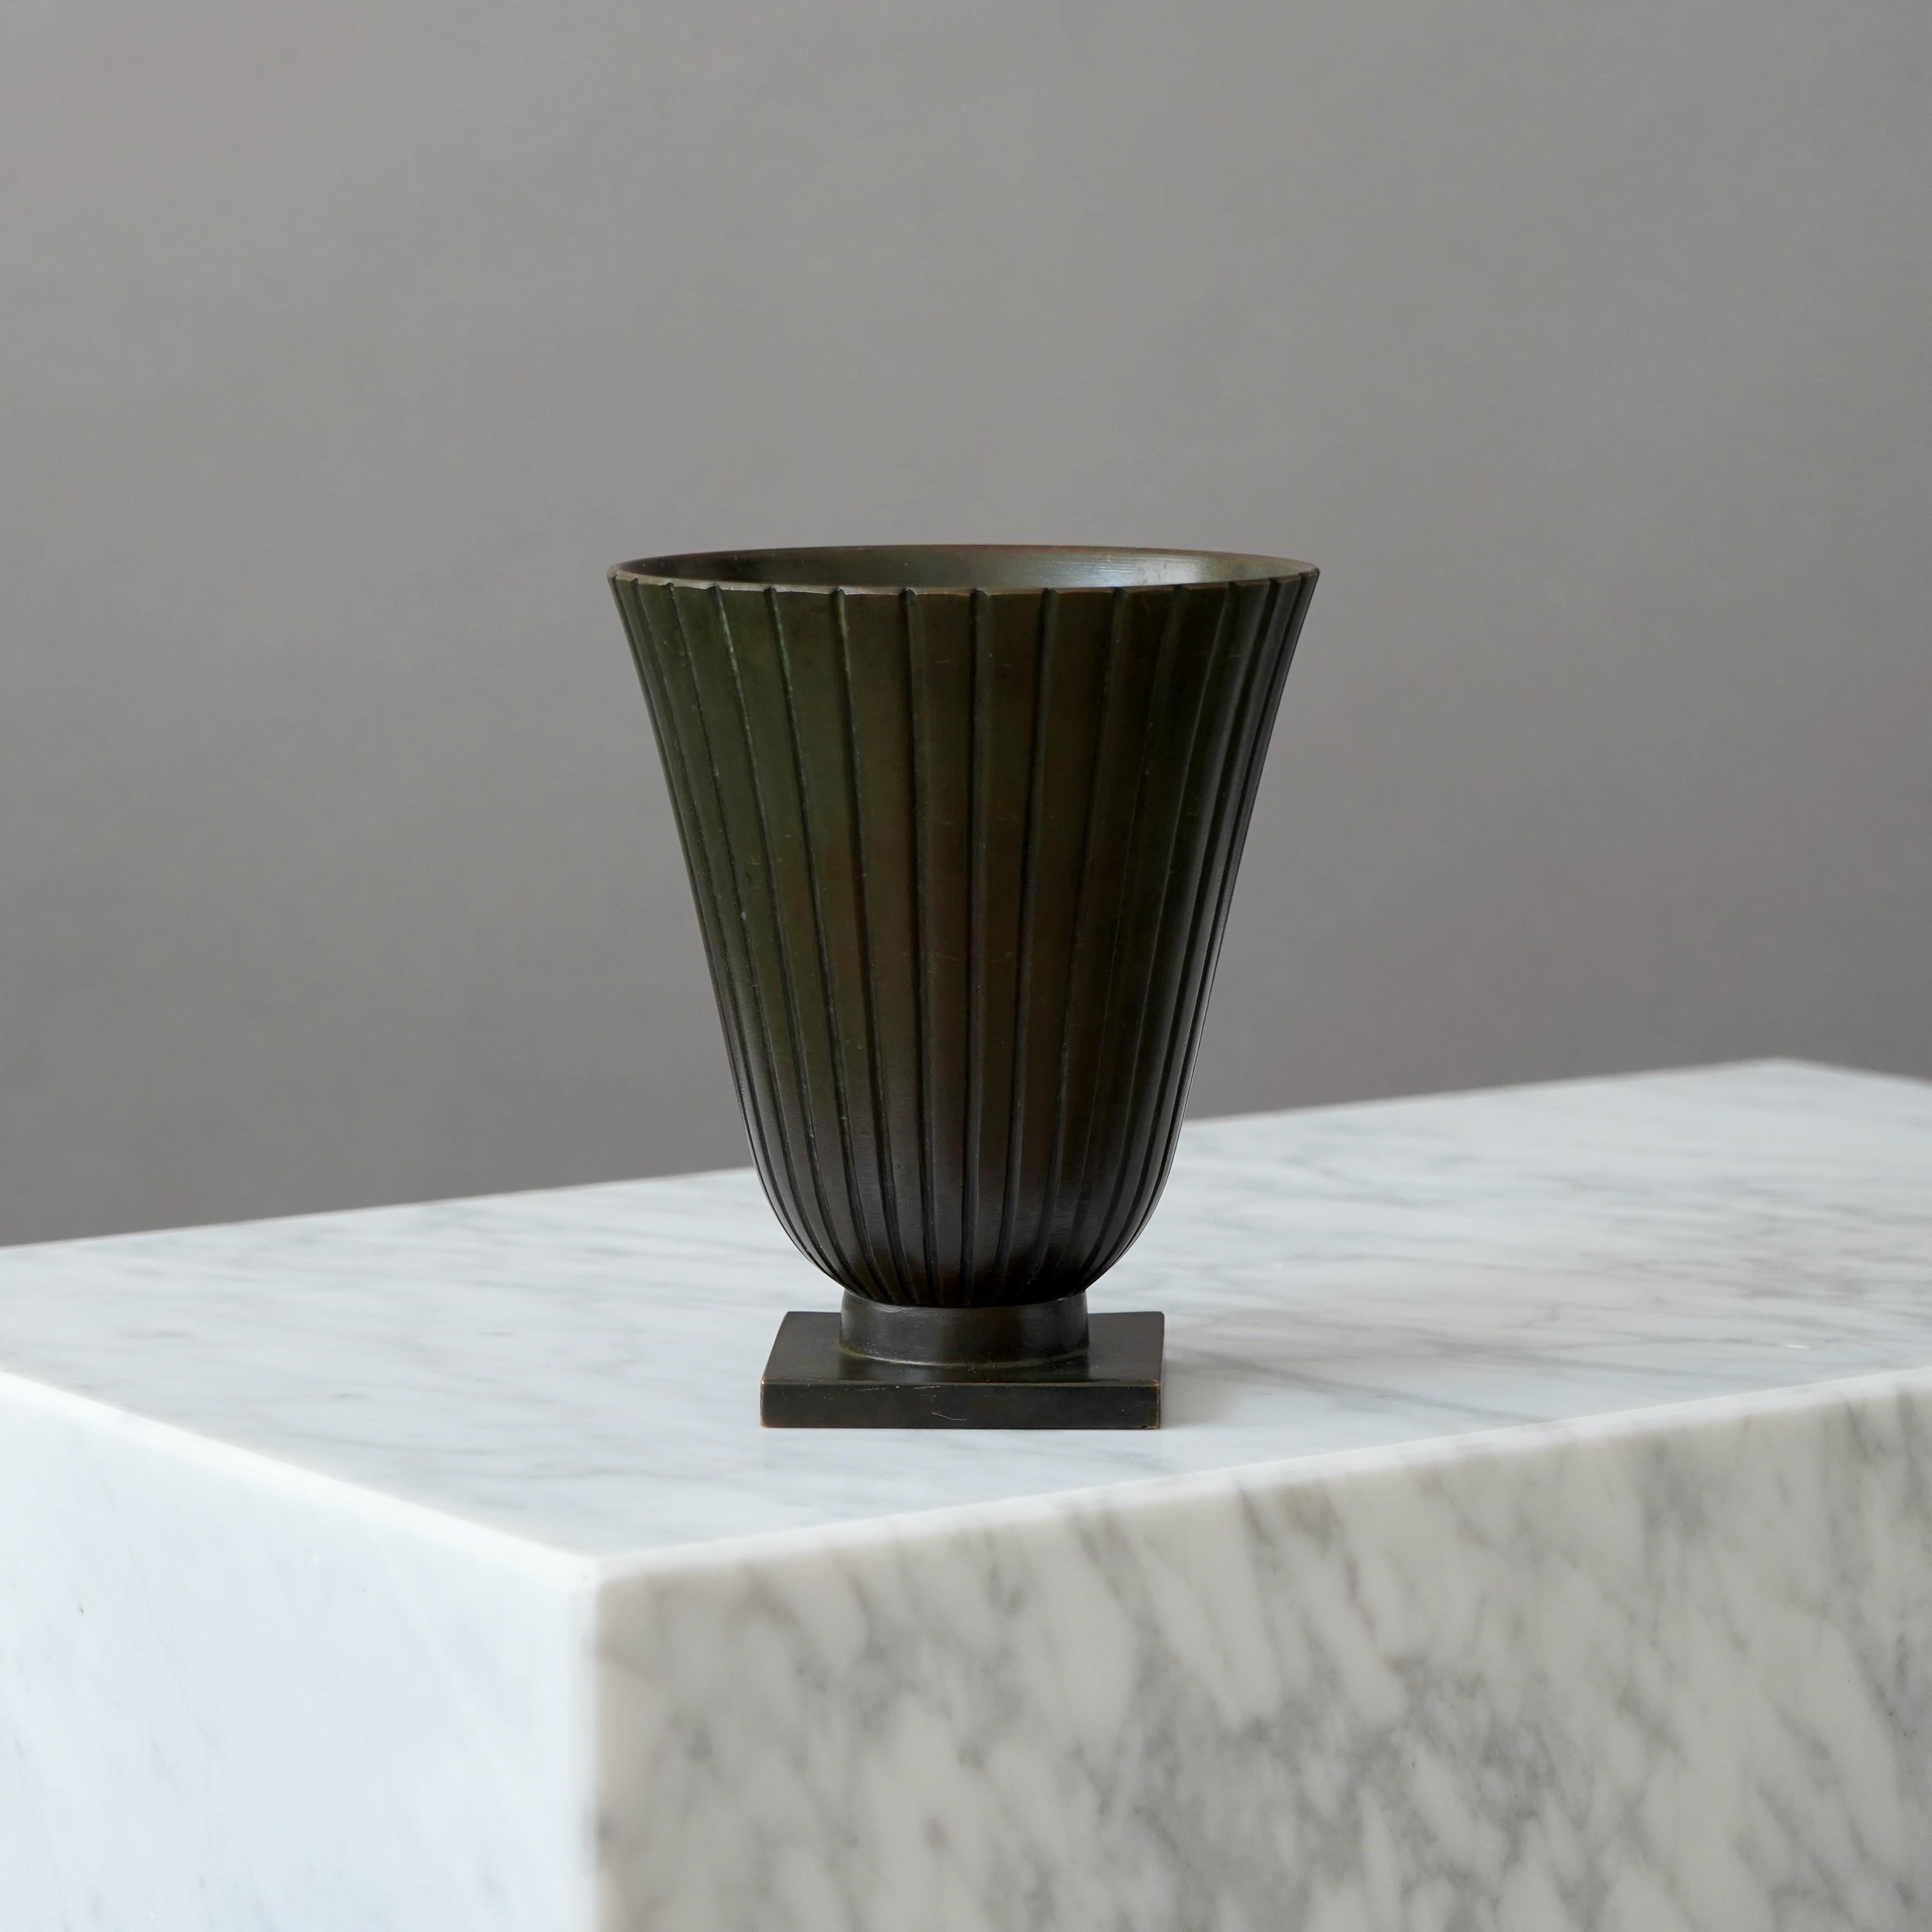 Un magnifique vase en bronze avec une patine étonnante. 
Fabriqué par GAB Guldsmedsaktiebolaget, Suède, années 1930.  

Très bon état, avec quelques légères rayures.
Estampillé 